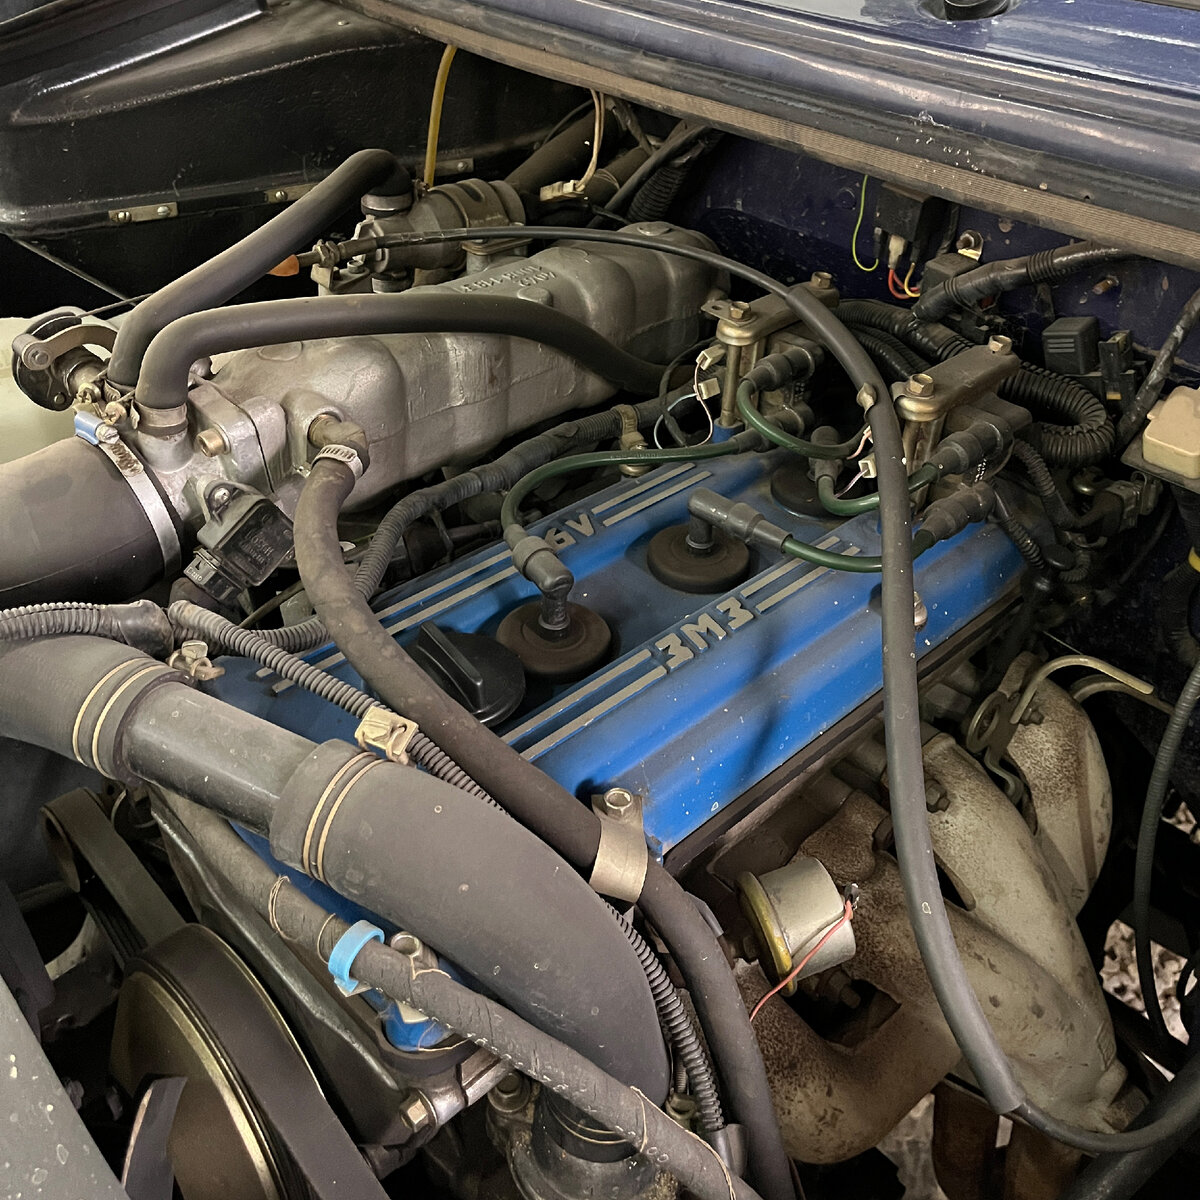 Под капотом нашего автомобиля уже установлен более современный двигатель ЗМЗ-409 объёмом 2,7 литра и мощностью 132 л.с. Соединён он с 5-ти ступенчатой МКПП.